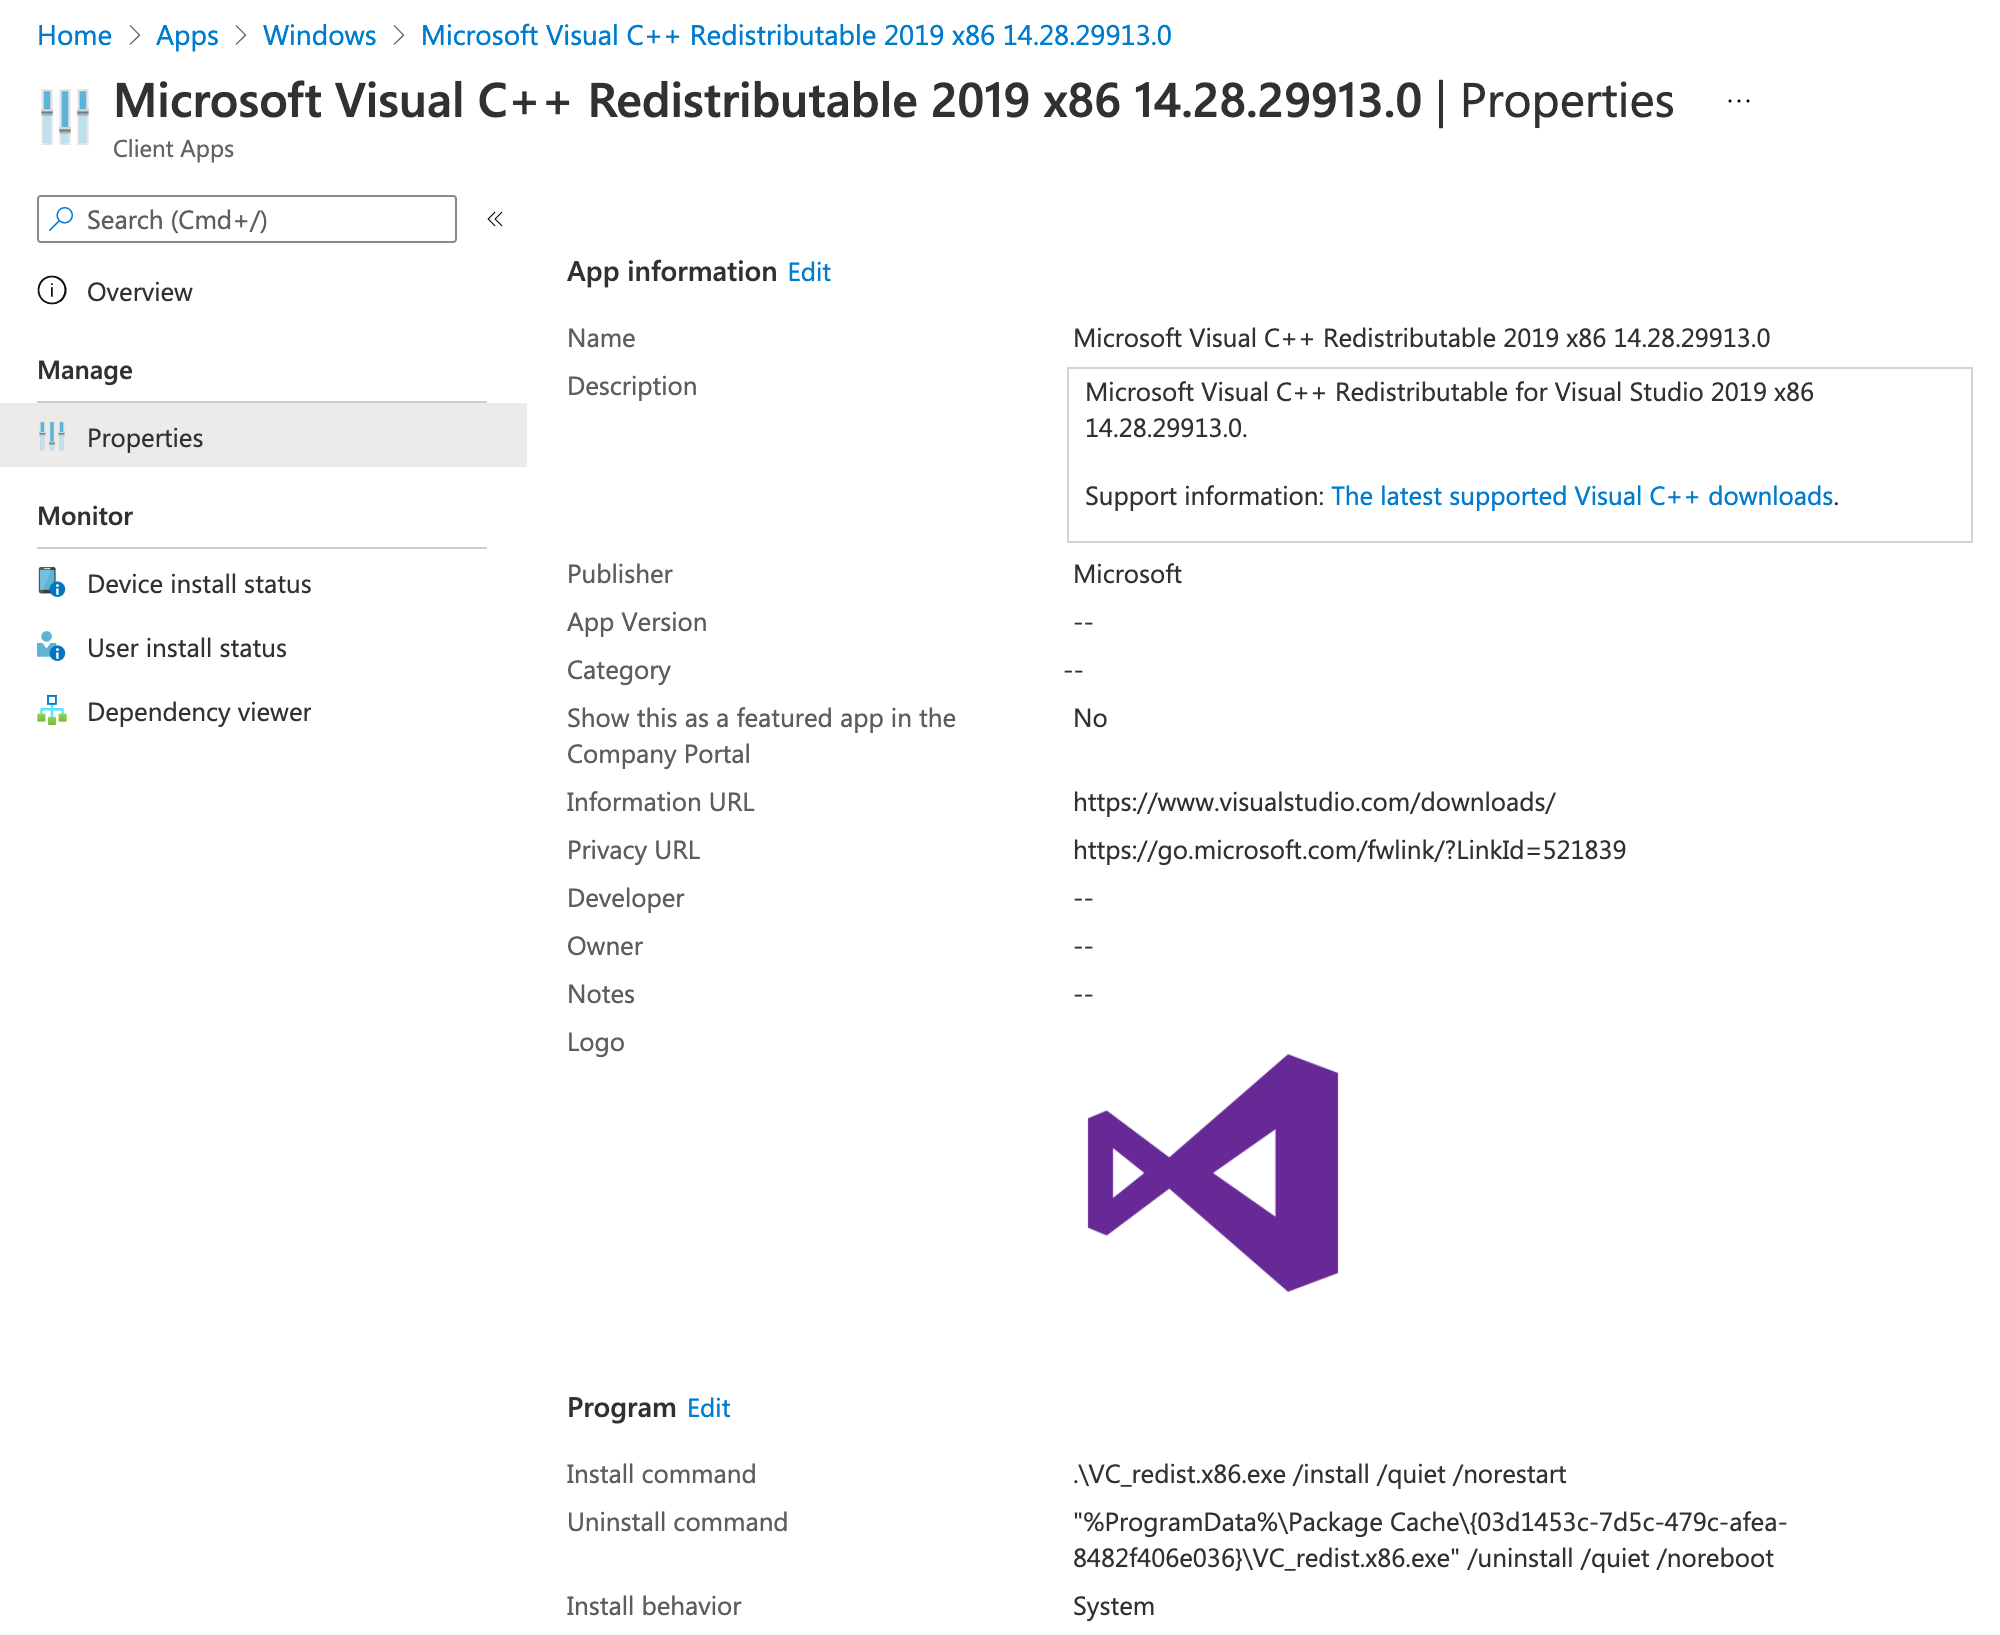 Microsoft Visual C++ Redistributables applications properties in Microsoft Intune